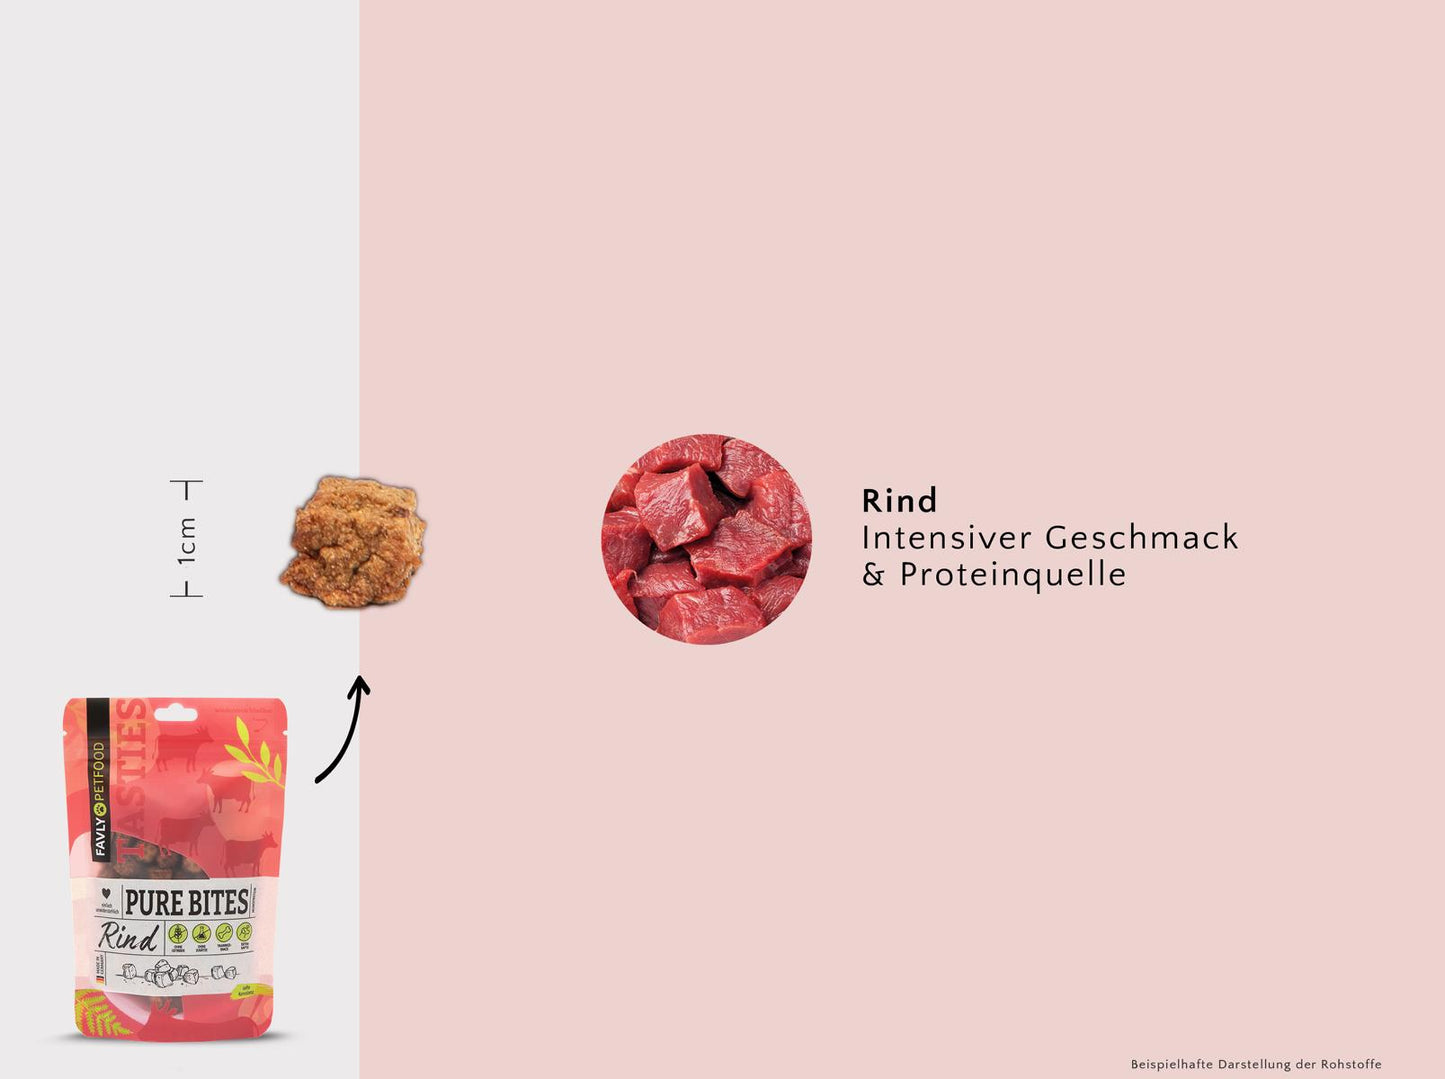 FAVLY Probierpaket "Snack it" - Unsere gesamte Snackvielfalt